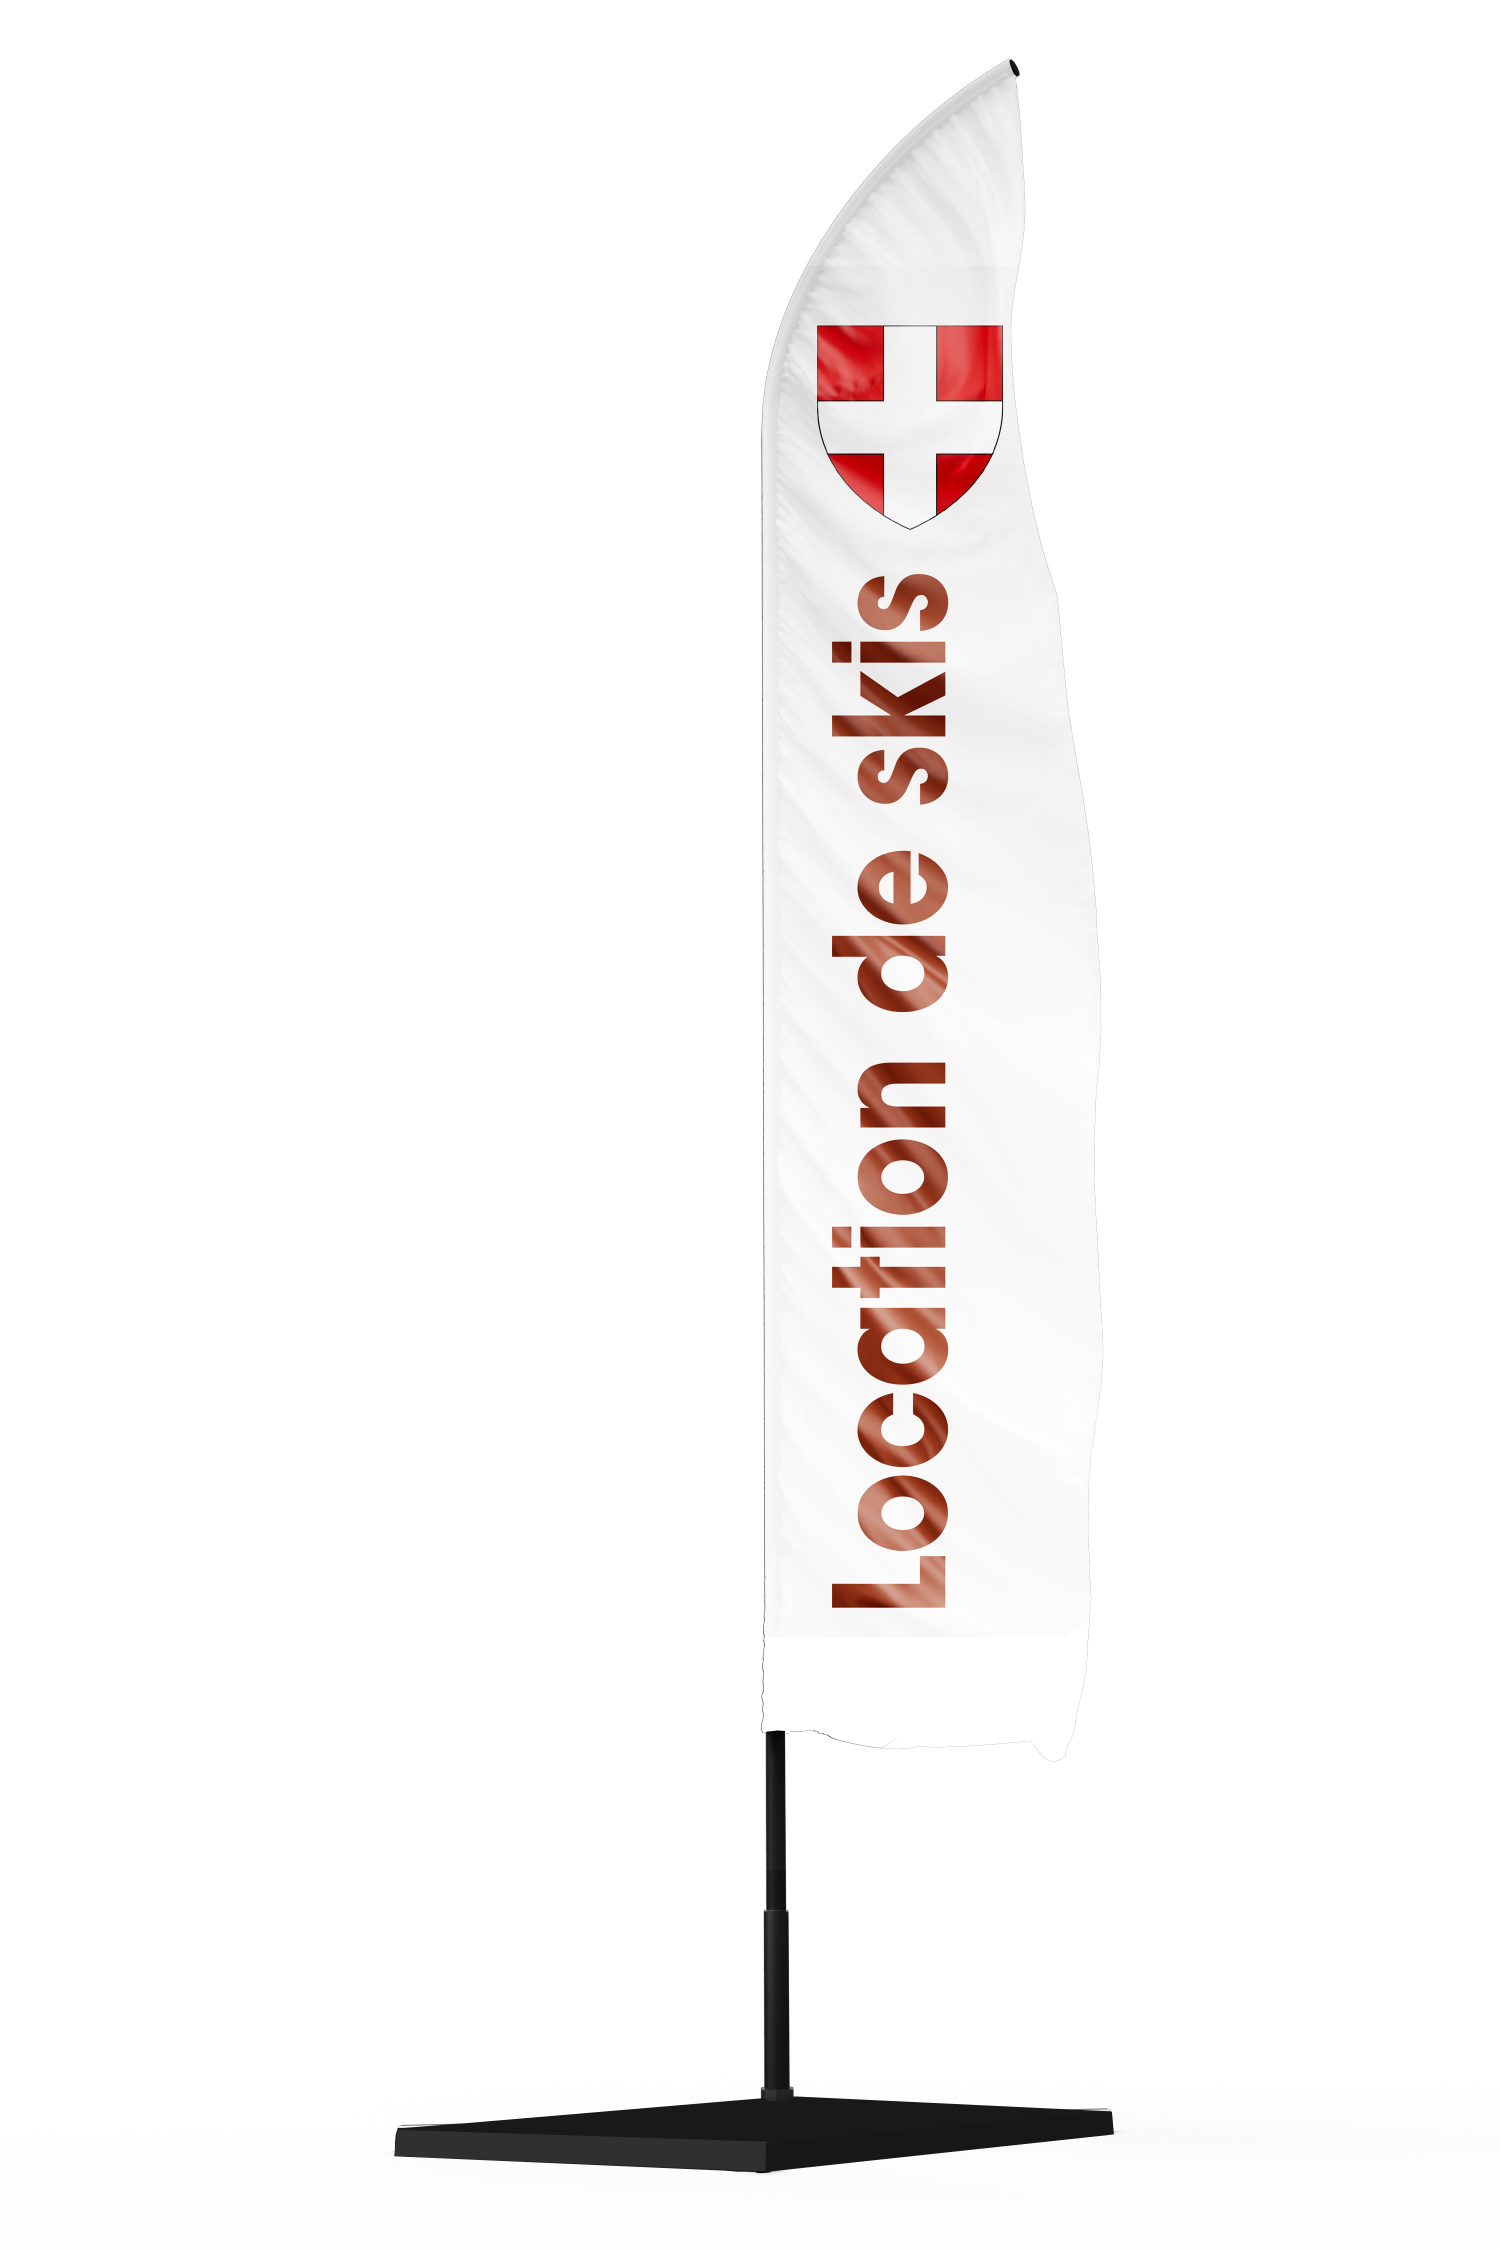 drapeau oriflamme publicitaire location de skis avec un drapeau de la Savoie en haut de la flamme